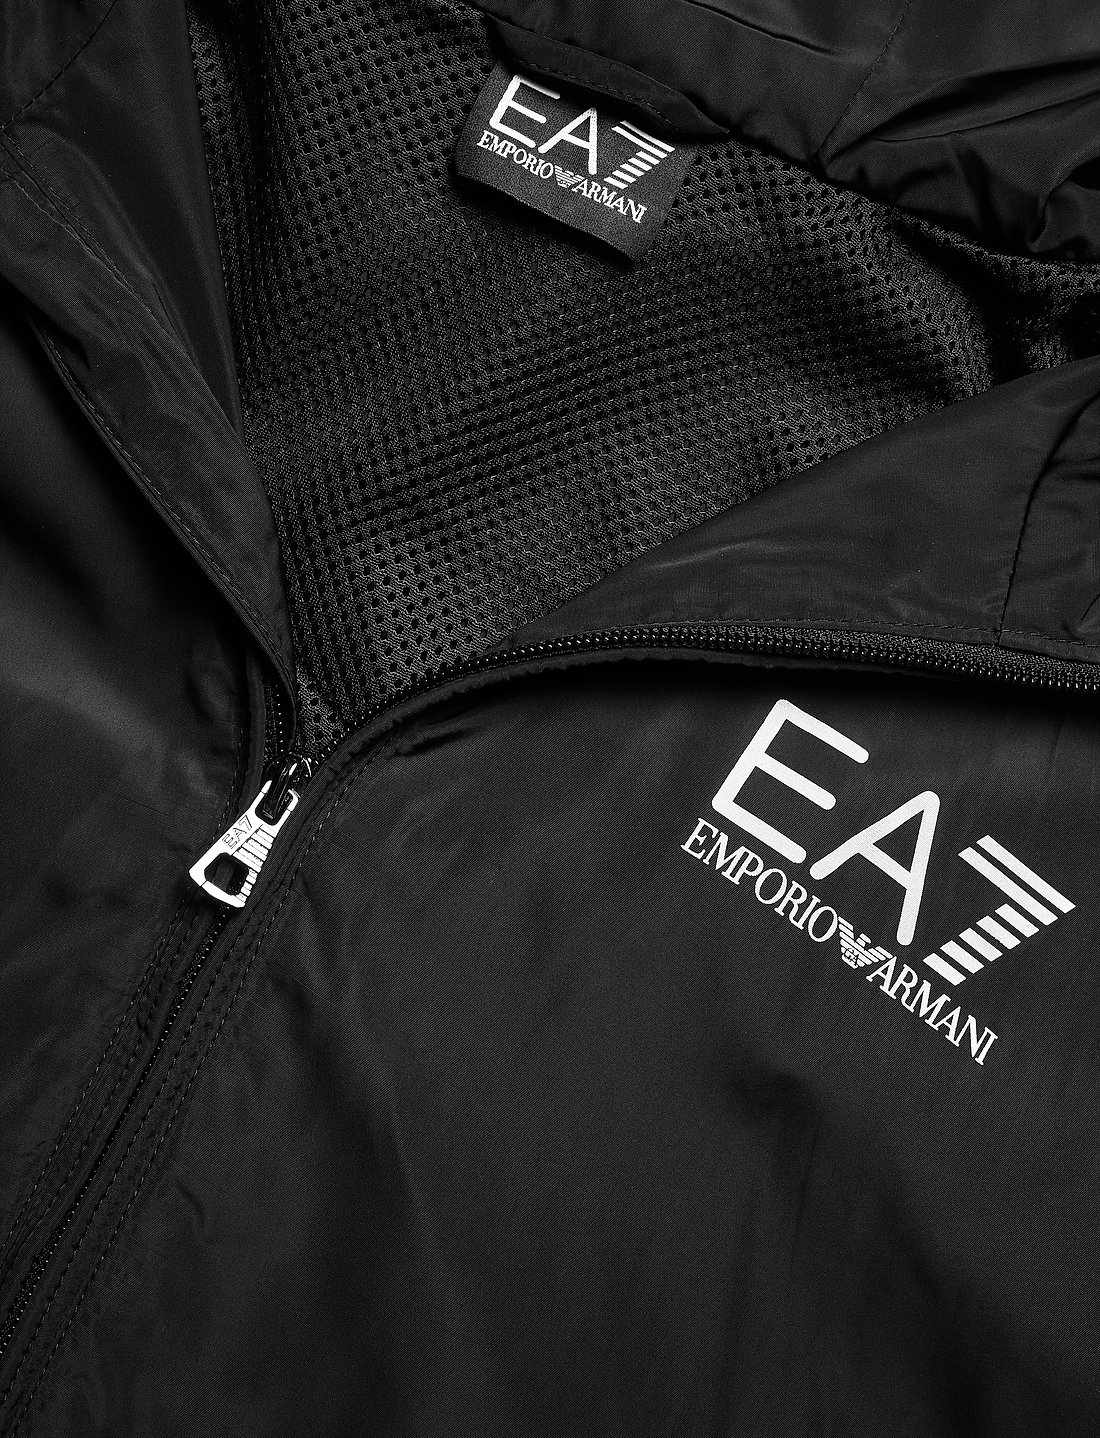 EA7 Outerwear - 1199 kr. Køb Vindjakker fra online på Boozt.com. Hurtig levering & nem retur